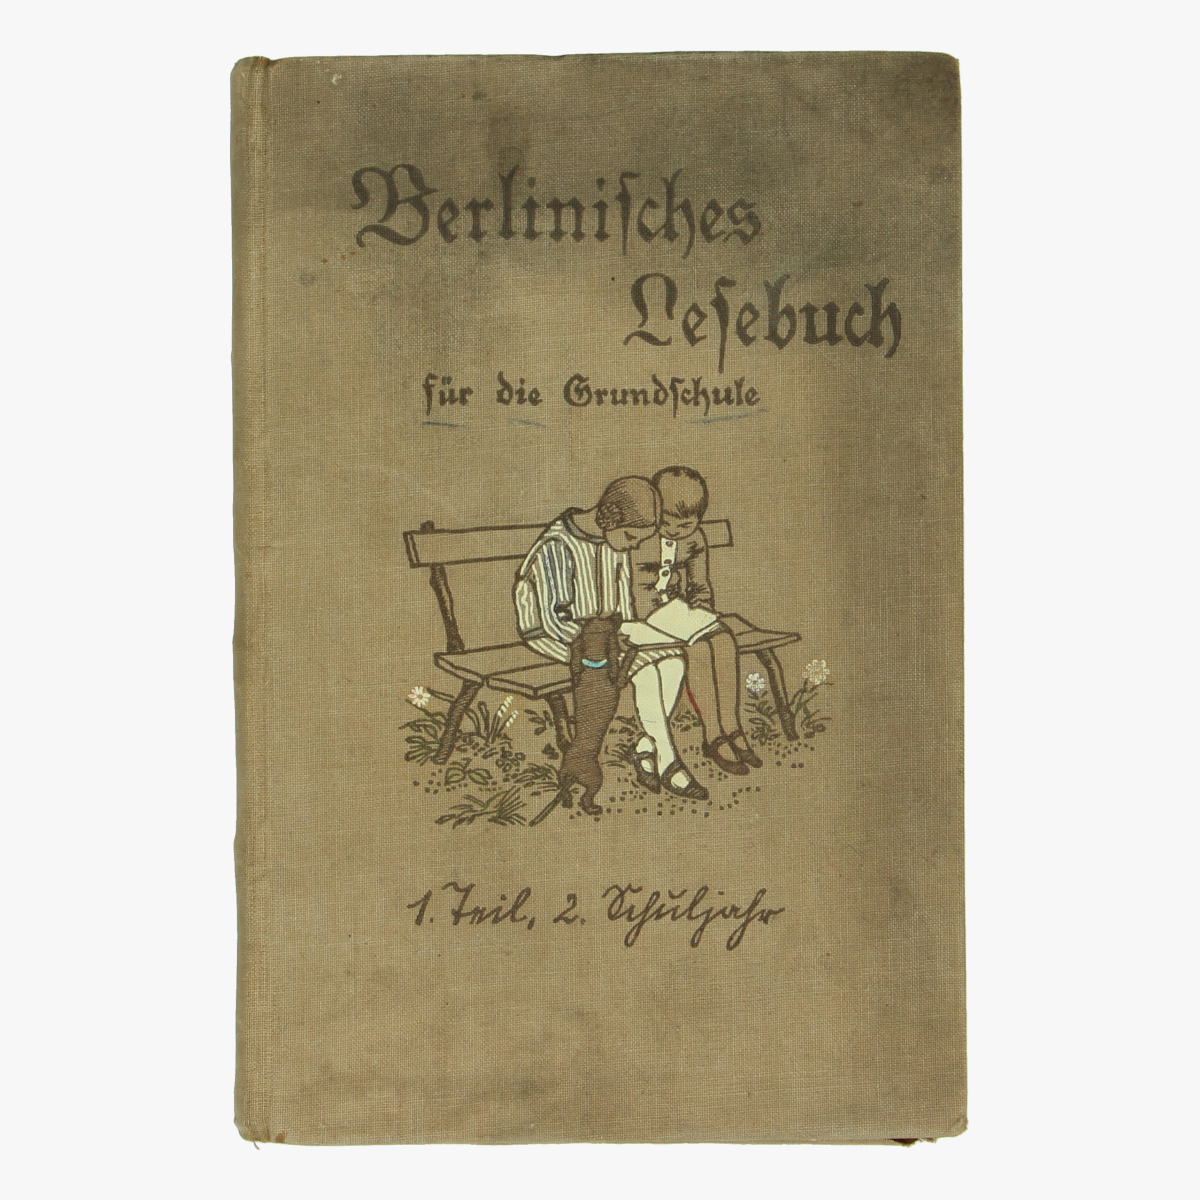 Afbeeldingen van Berlinifches Lefebuch für die Grundfchute